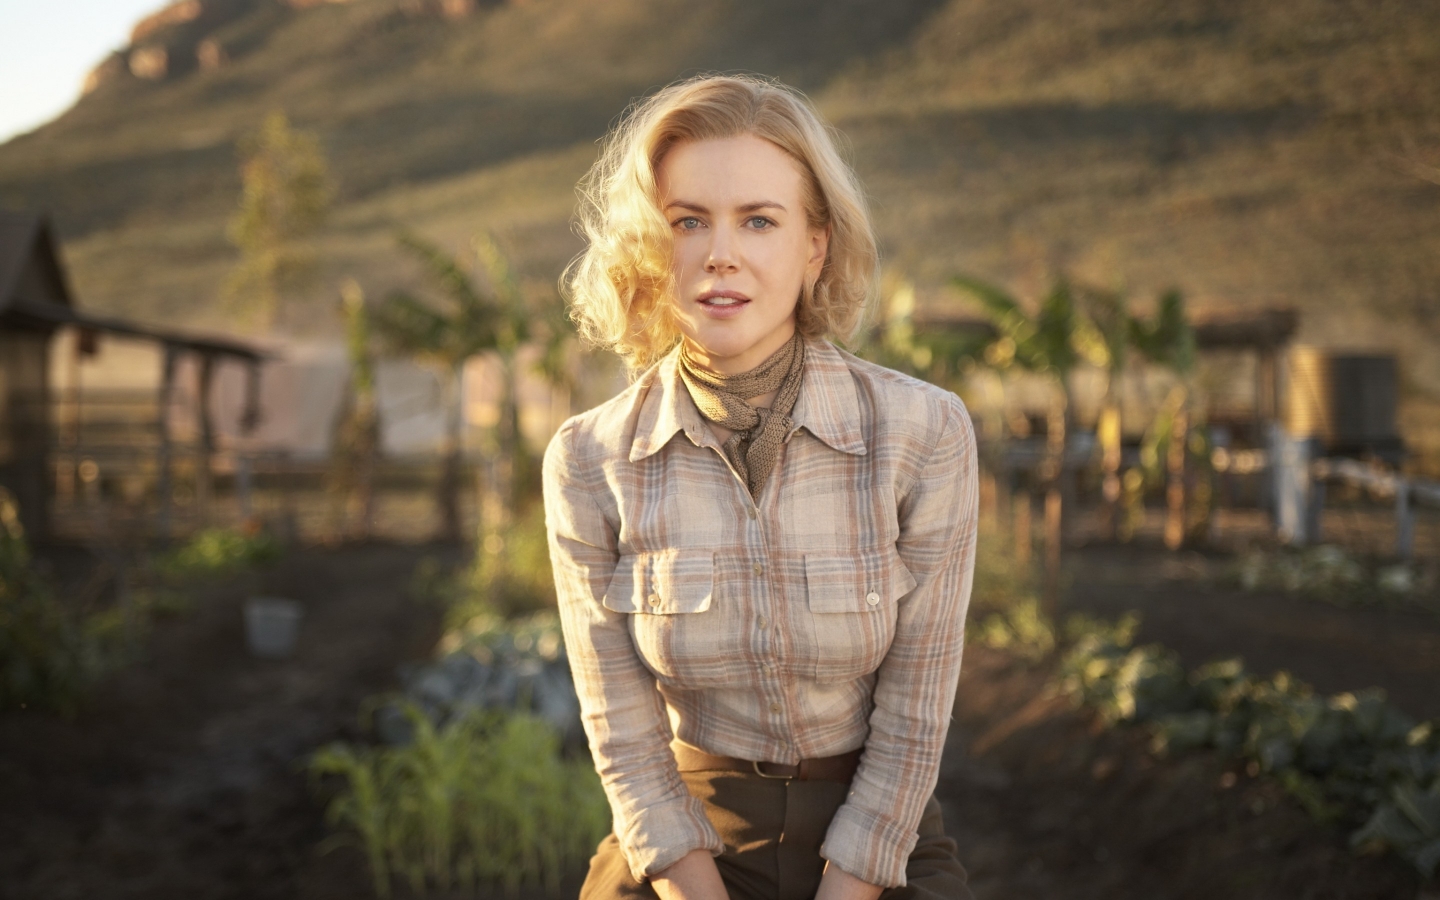 Nicole Kidman Australian Actress for 1440 x 900 widescreen resolution